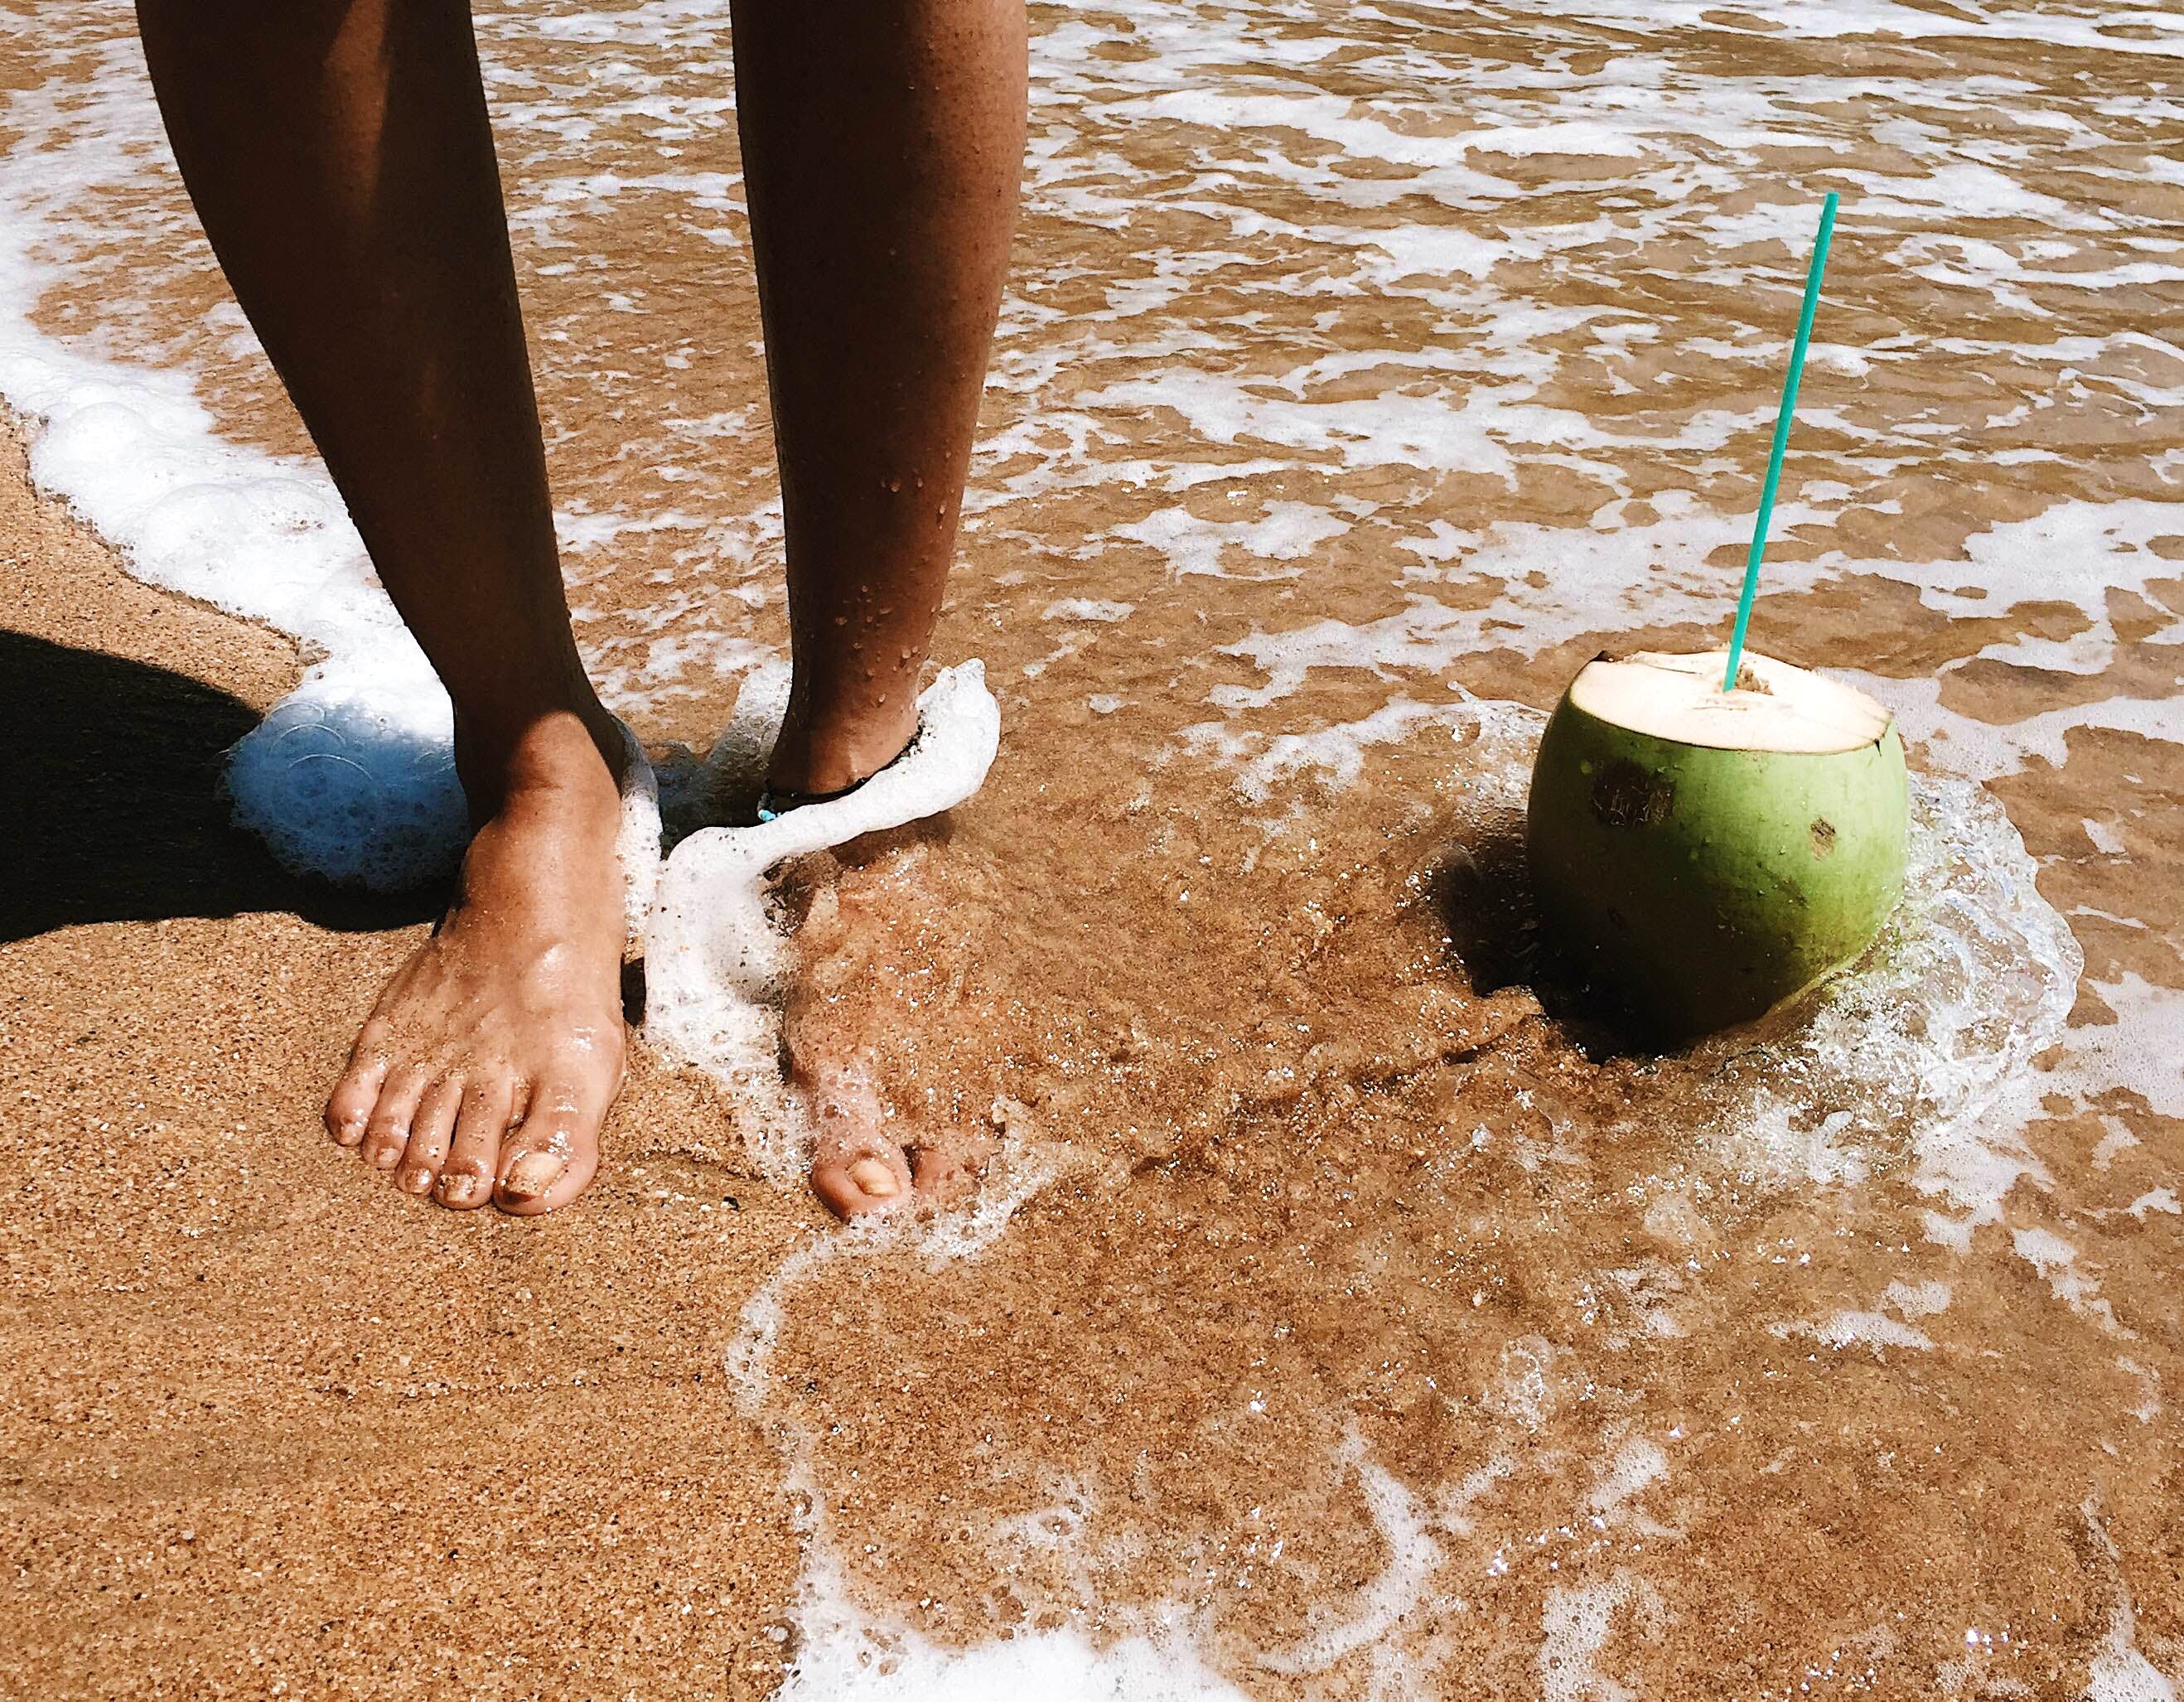 Water,Sand,Human leg,Leg,Foot,Barefoot,Soil,Summer,Vacation,Hand